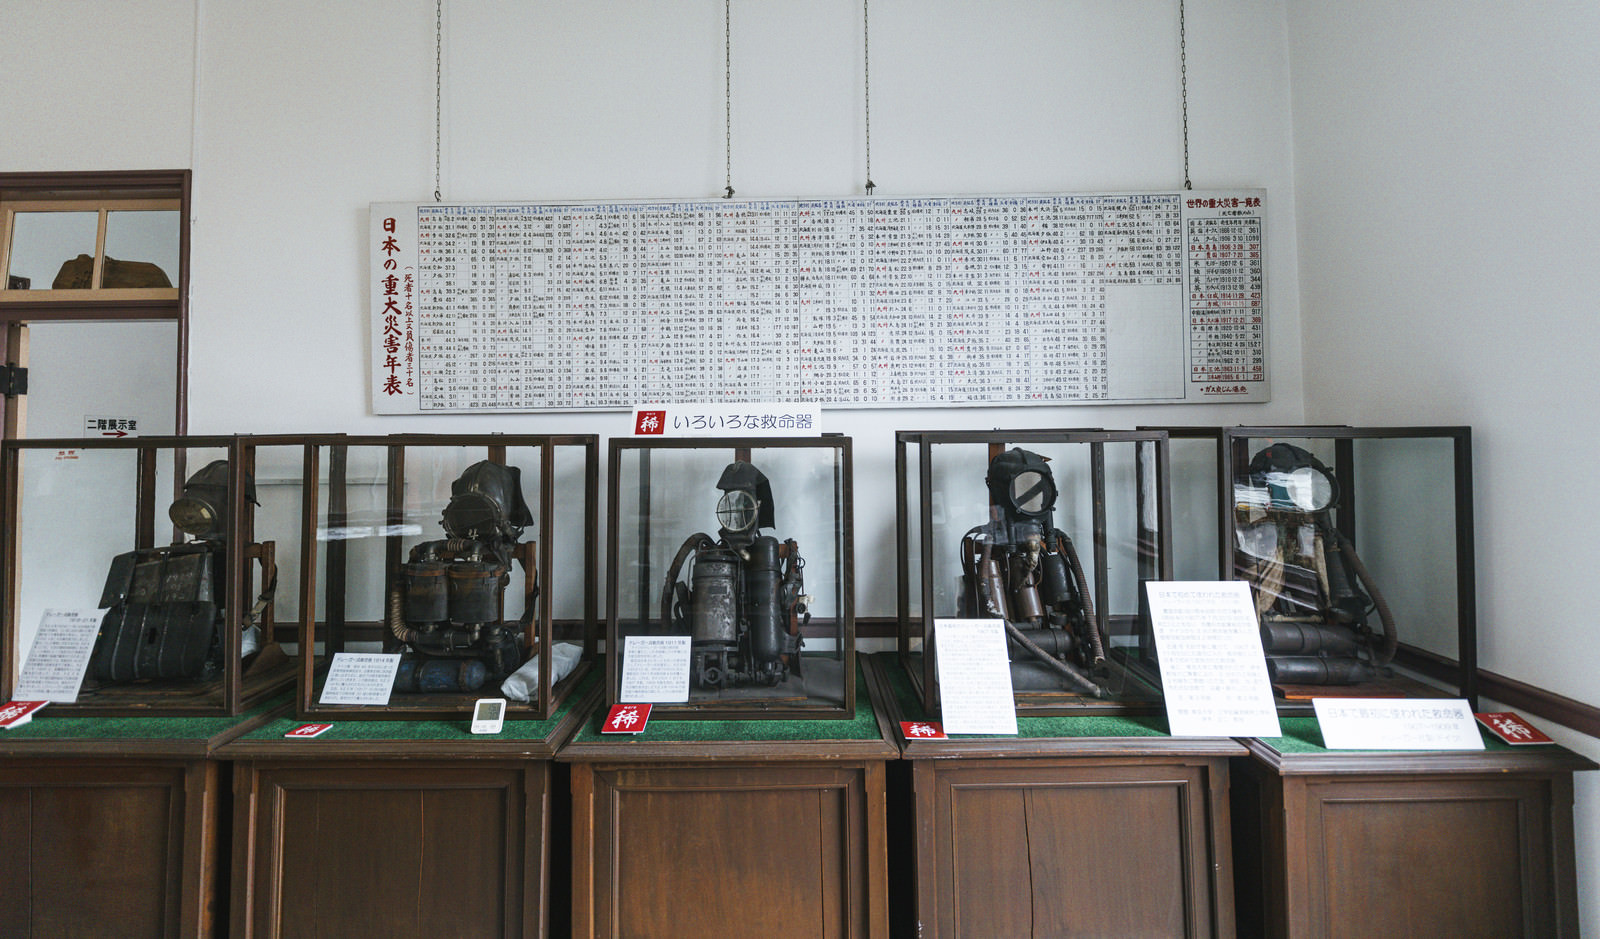 「トレガー式救命器（1907年輸入ドイツ製）（直方市石炭記念館本館展示室） | フリー素材のぱくたそ」の写真